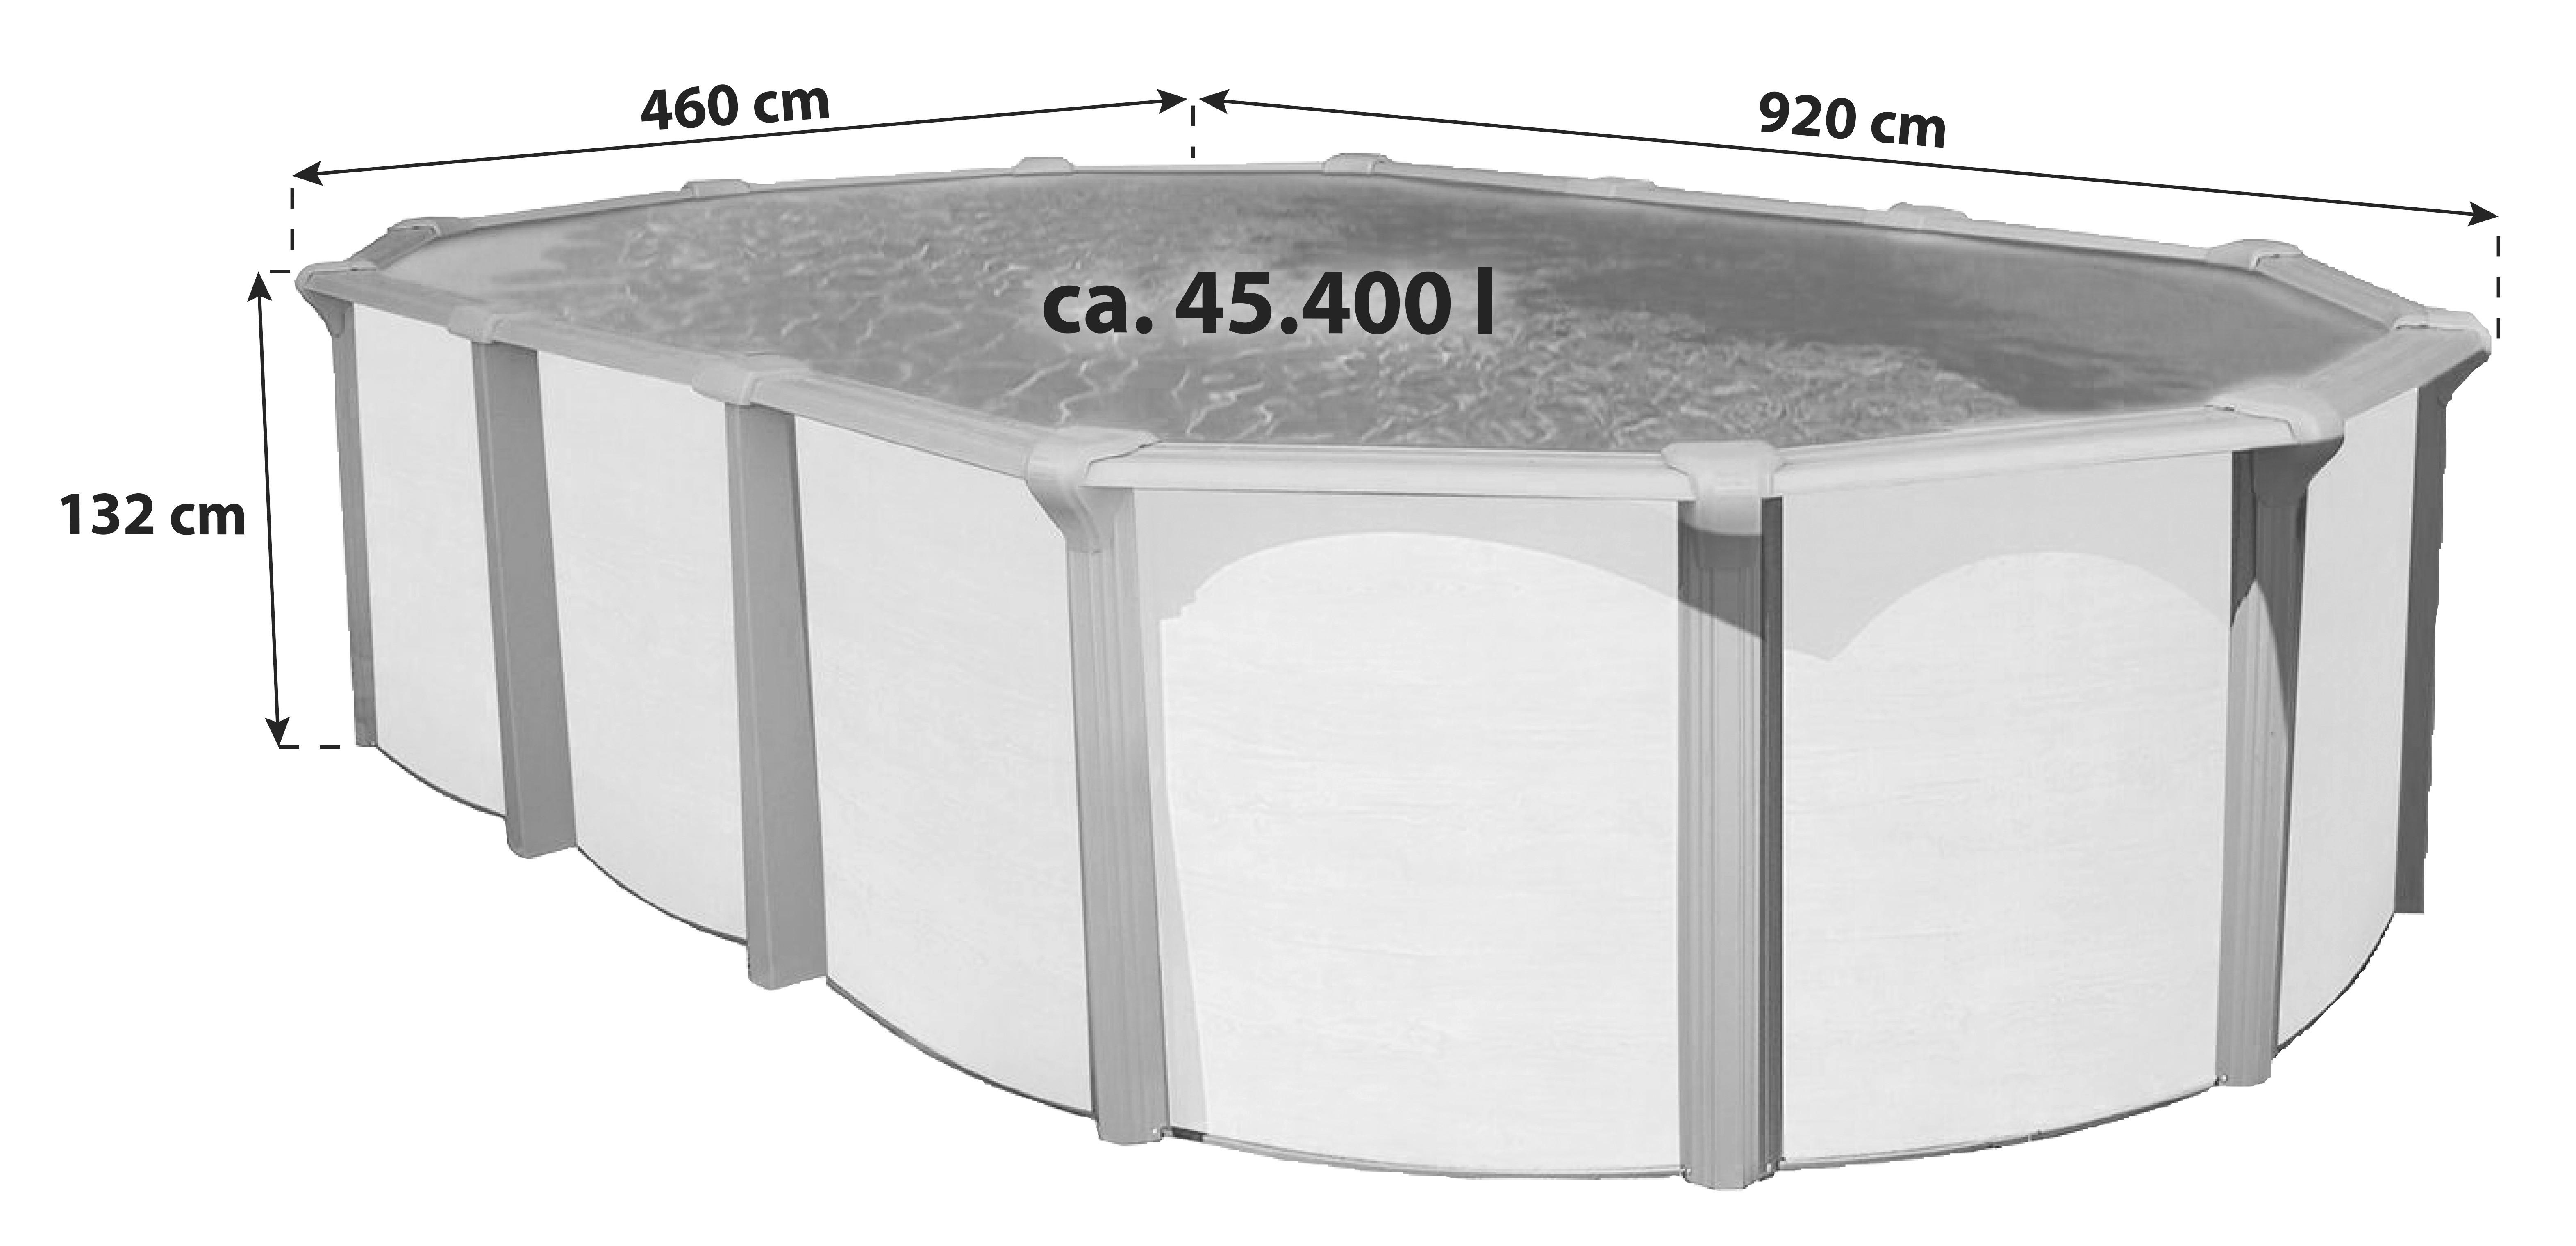 Stahlwandpool Oval Steely De Luxe mit Leiter L: 920 cm - Braun/Weiß, Basics, Kunststoff (920/460/132cm)